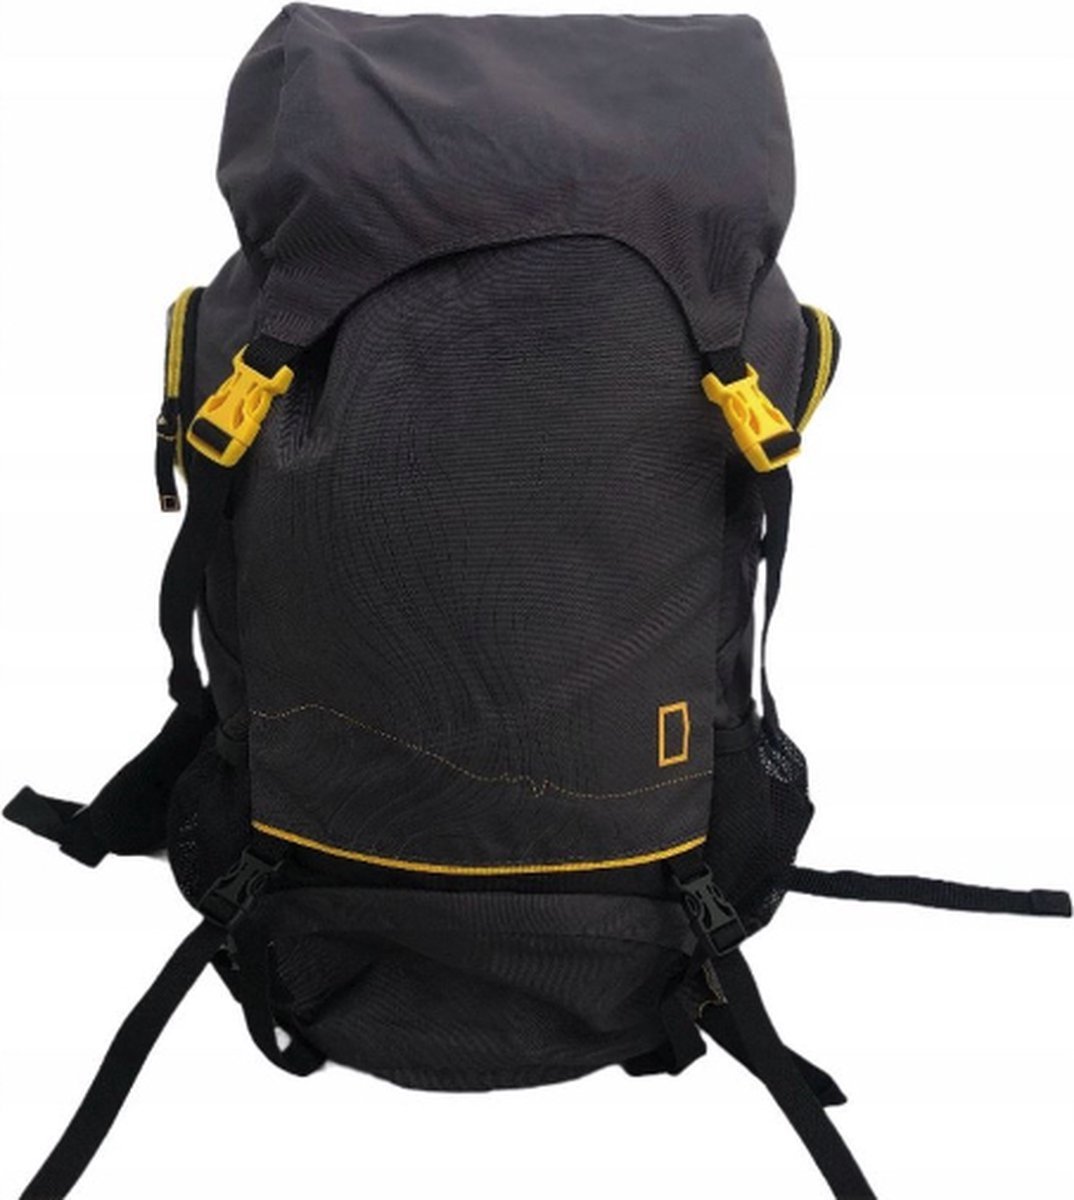 National Geographic 50 Liter Wandelrugzak - Premium Backpack Heren & Dames - Unisex - Rugzak - Camping - Hiken - Outdoor - Vakantie - Heupriem - Verstelbaar - Kamperen - Trekking - Rugtas - Reistas - Gerecycled Polyester - Zwart / Geel